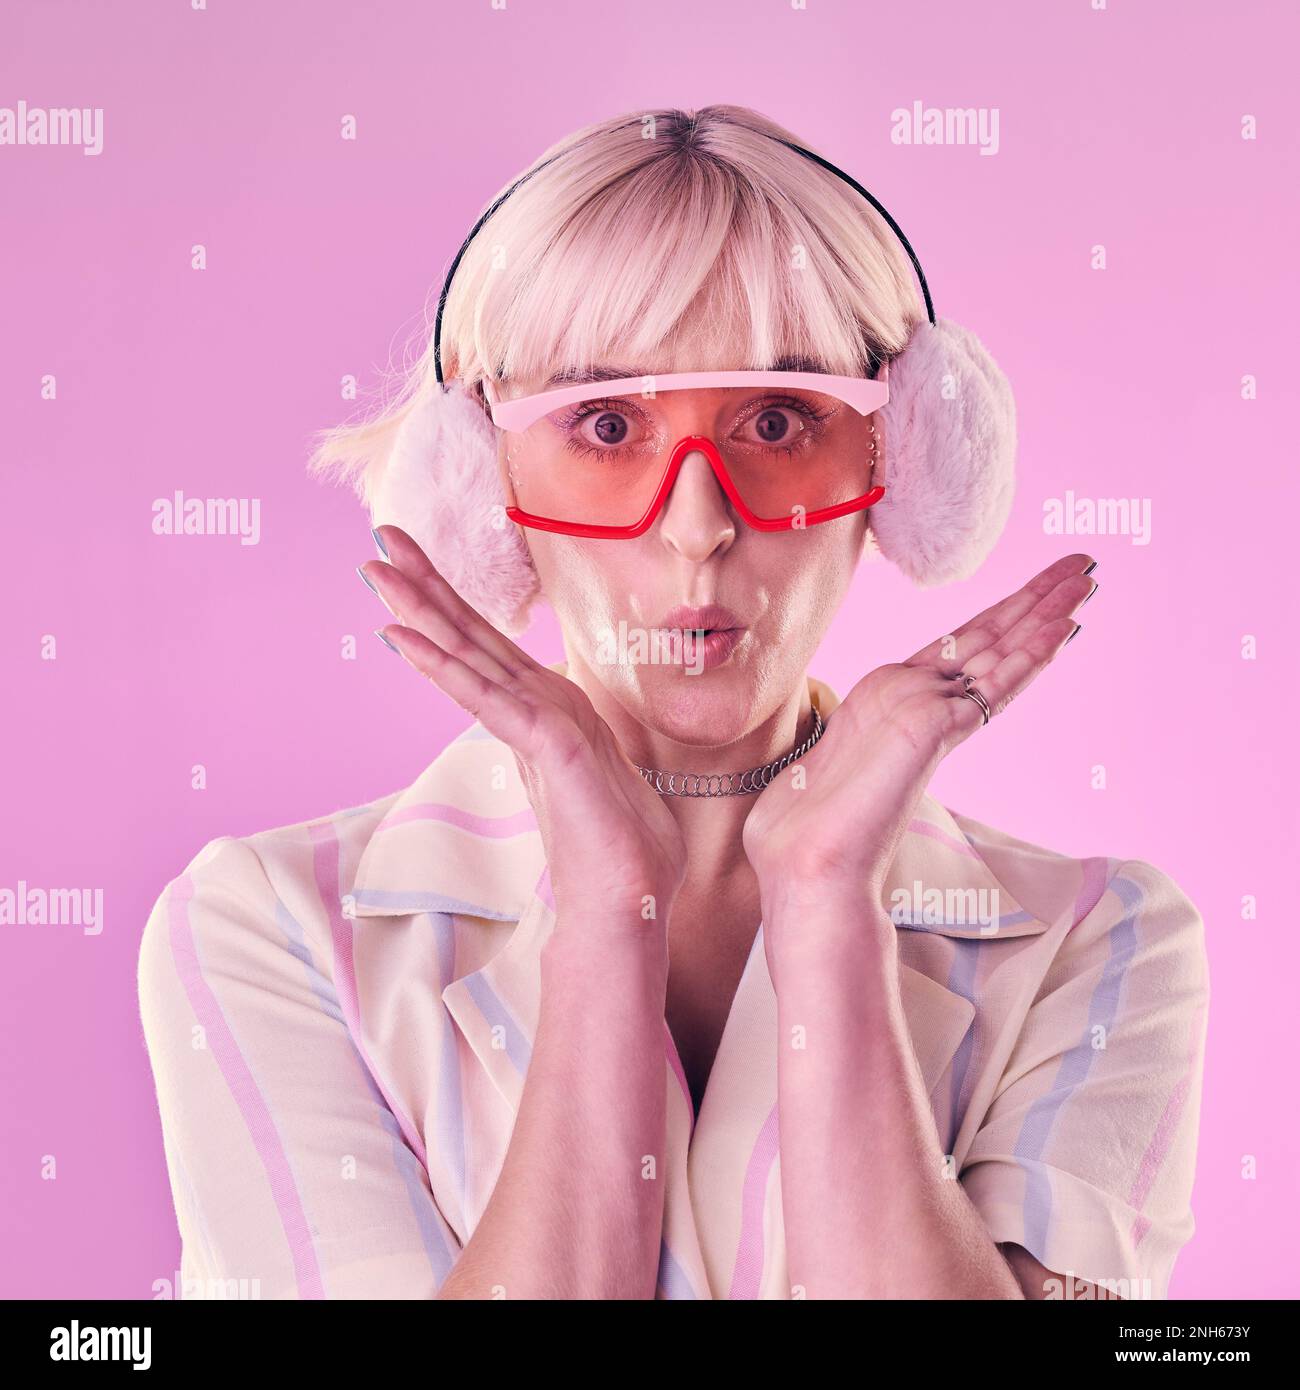 Mode, Porträt und eine Frau im Studio für Wow, Überraschung und Comic auf pinkfarbenem Hintergrund. Ästhetische Modellperson mit Brille und Ohrenschützer Stockfoto